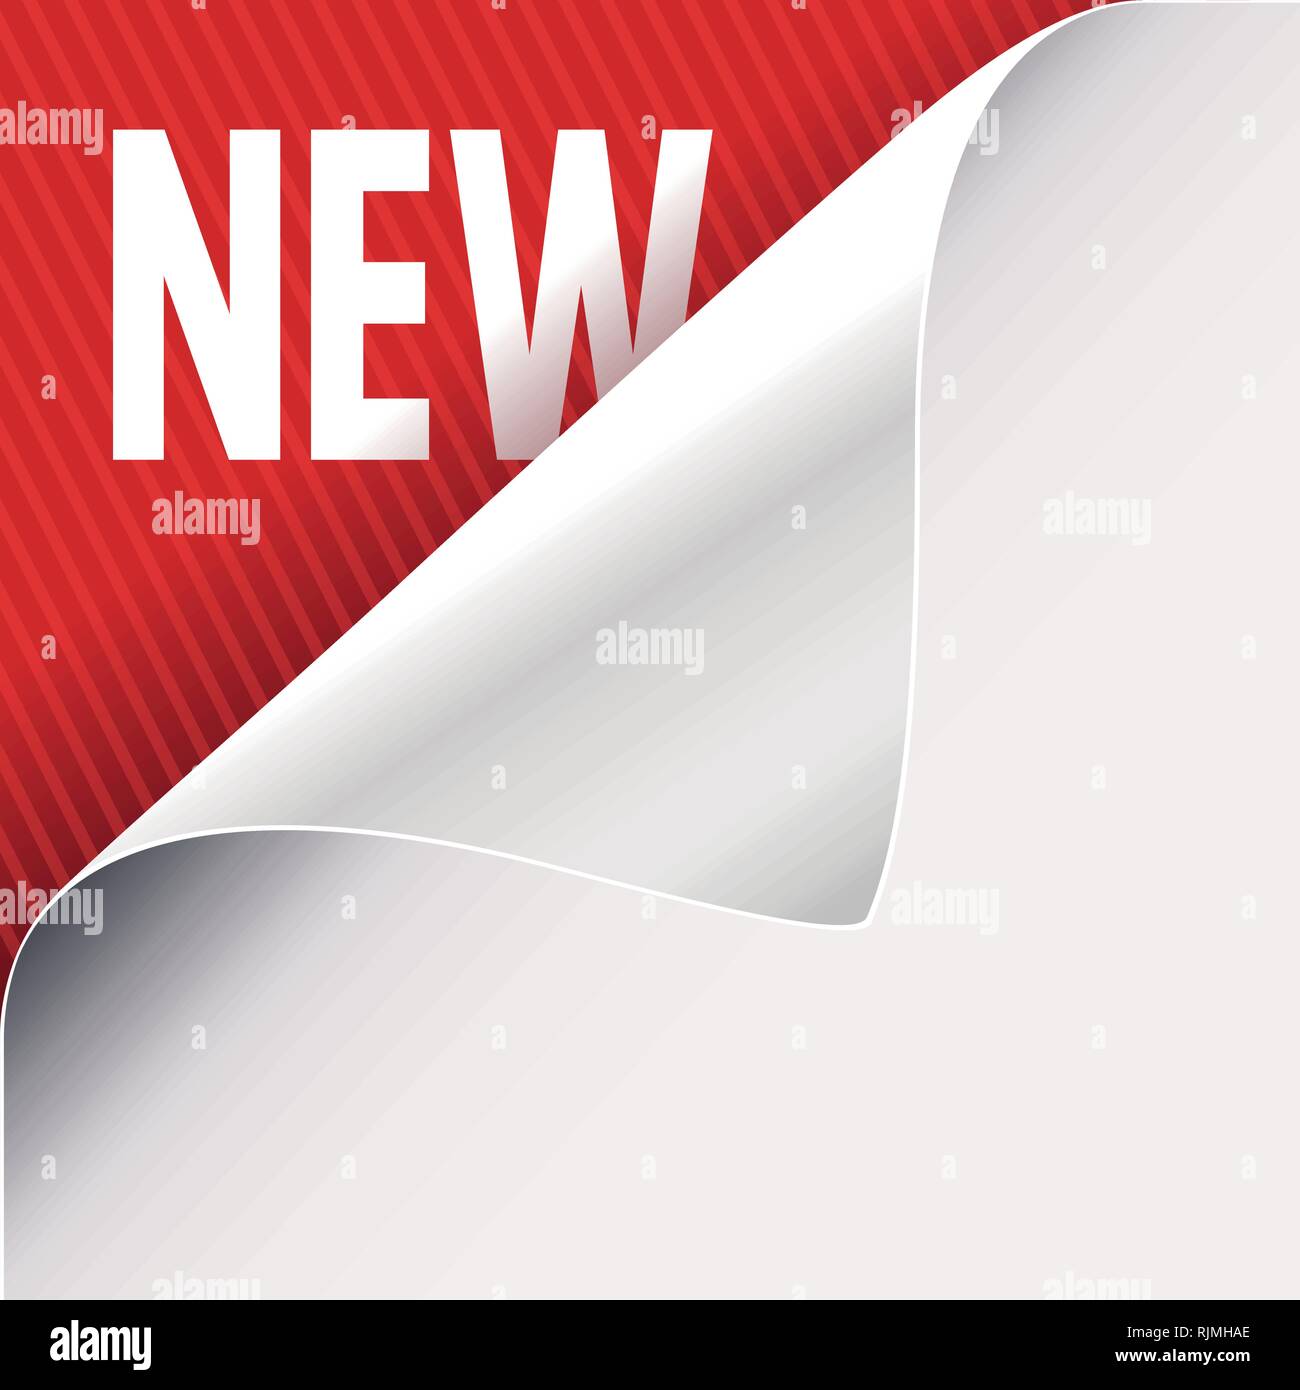 Angolo arricciato del libro bianco su una rossa in alto a sinistra sullo sfondo di angolo. Il nuovo slogan di segno. Illustrazione Vettoriale. Illustrazione Vettoriale